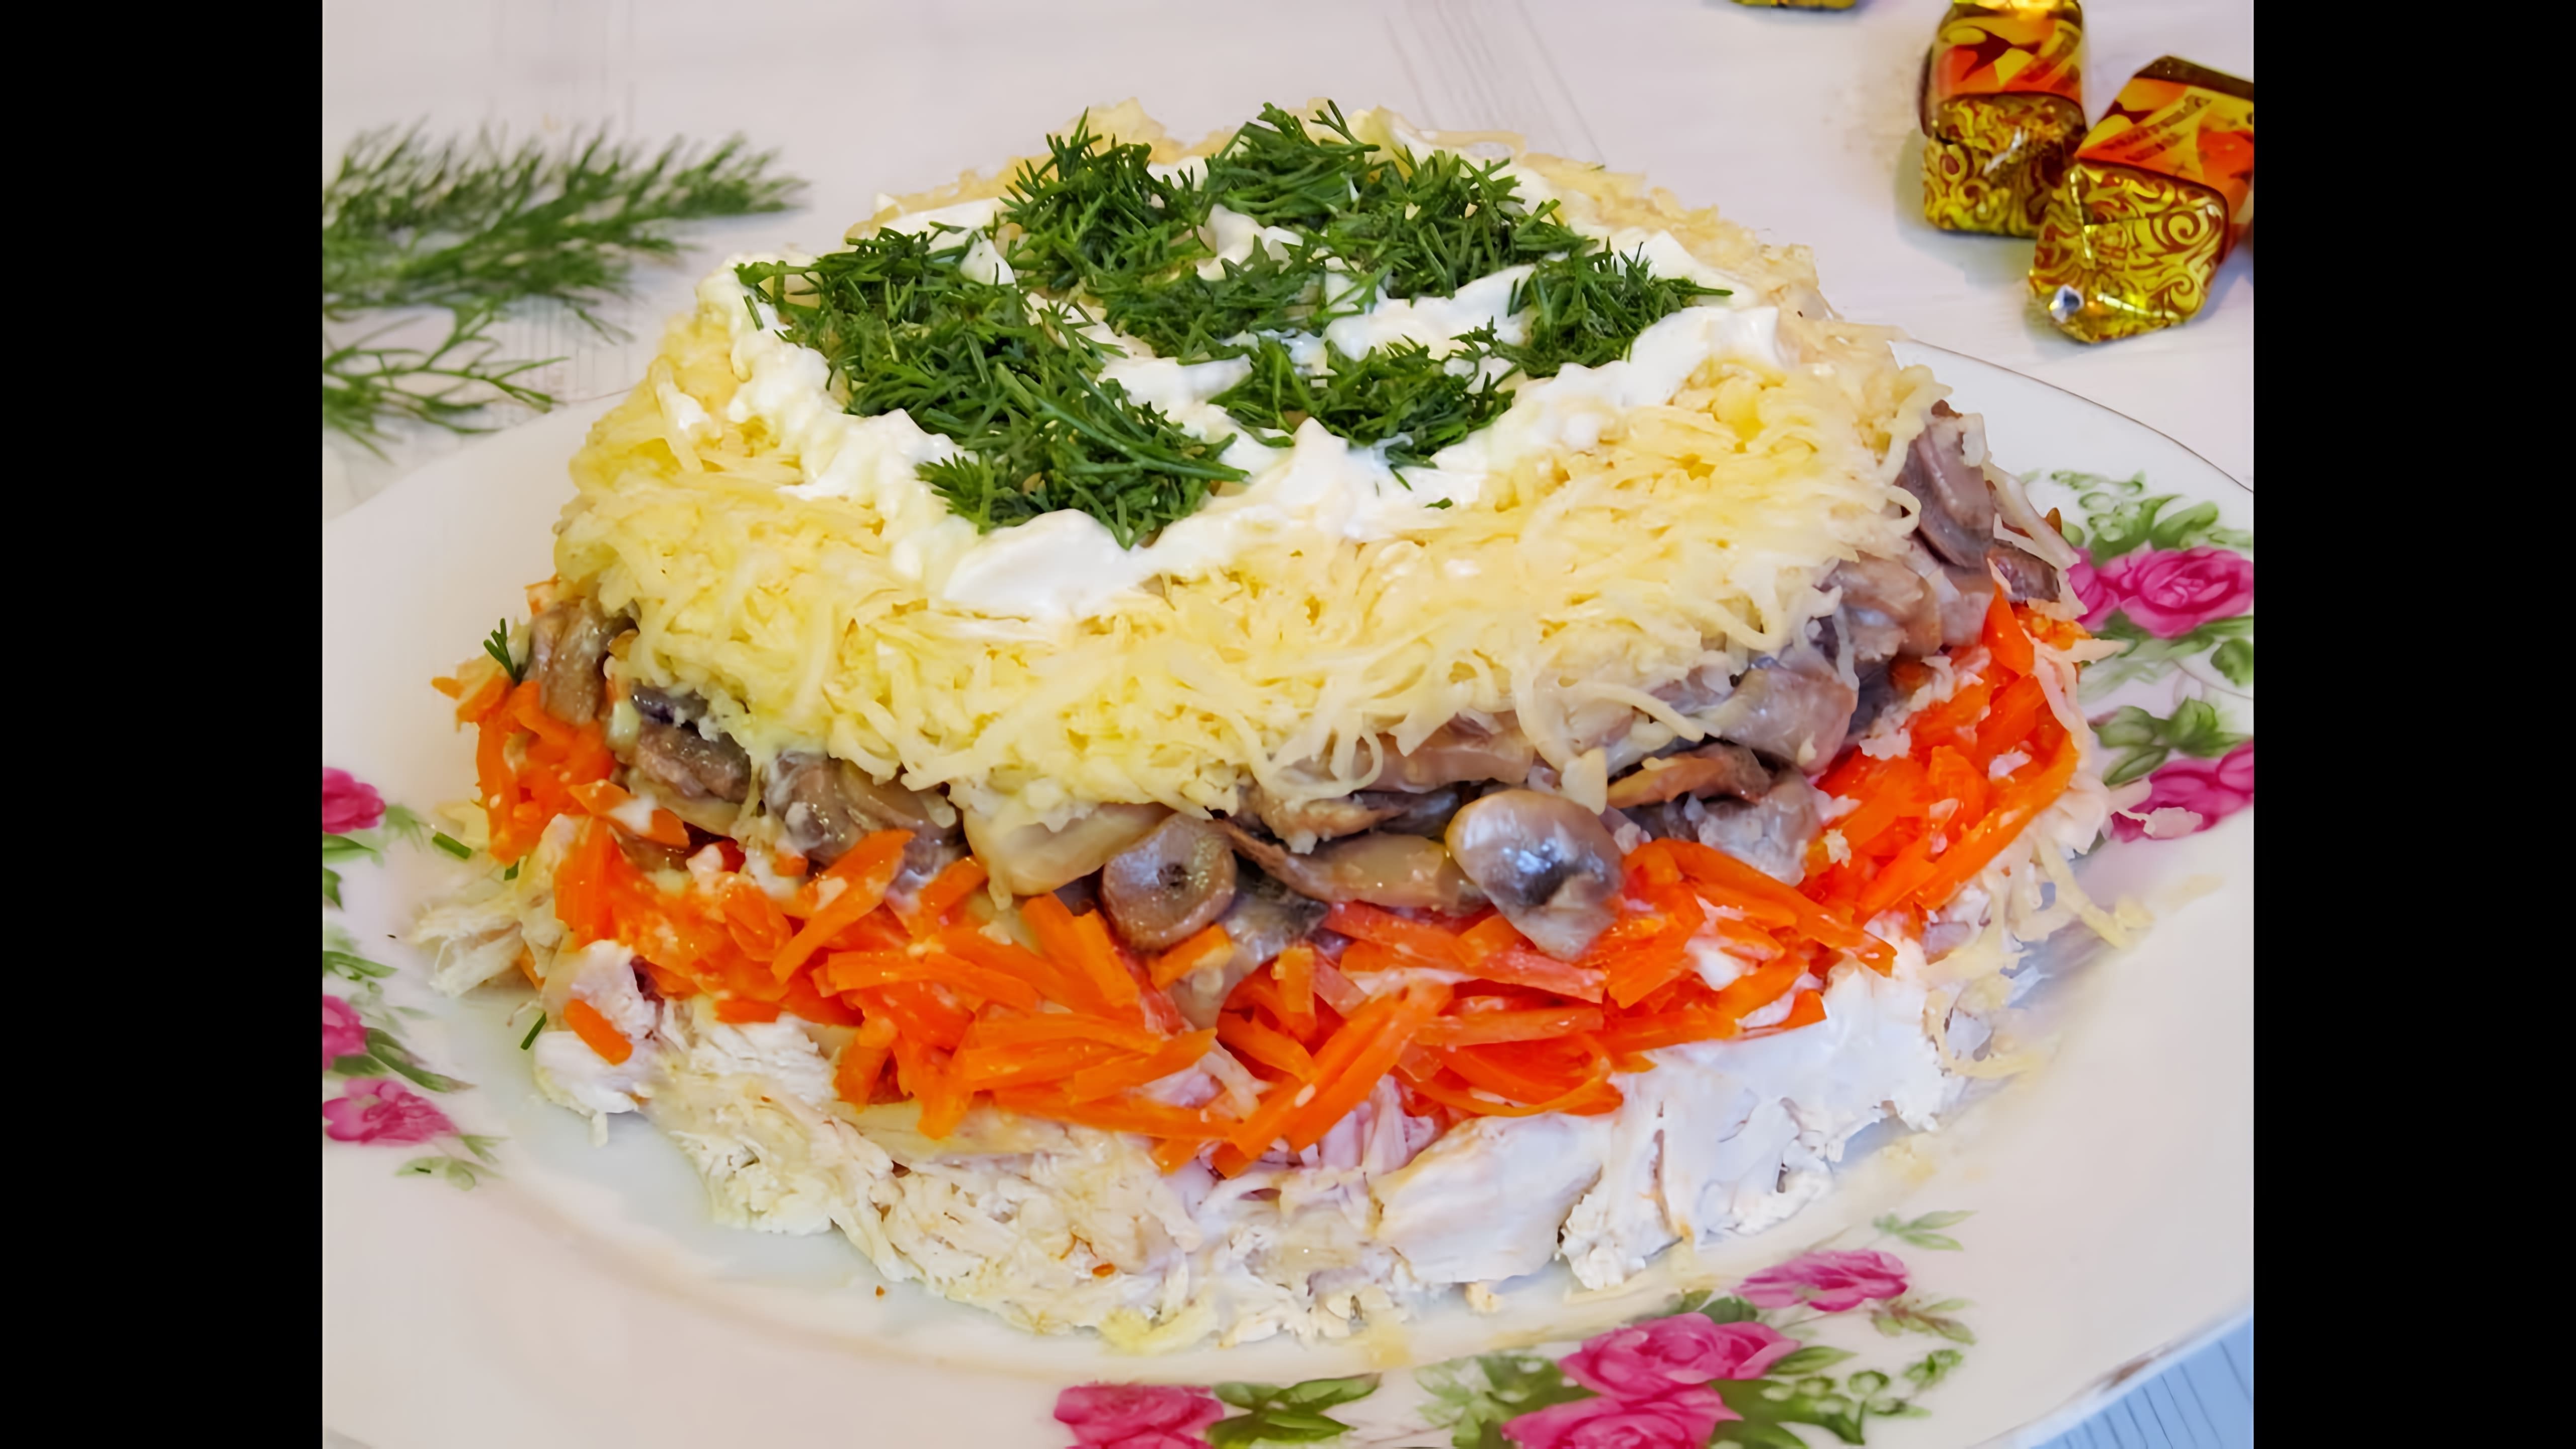 Чудесный салат, хороший вариант для праздничного стола, вкусно и красиво. В салате присутствует и нотка пикантности... 